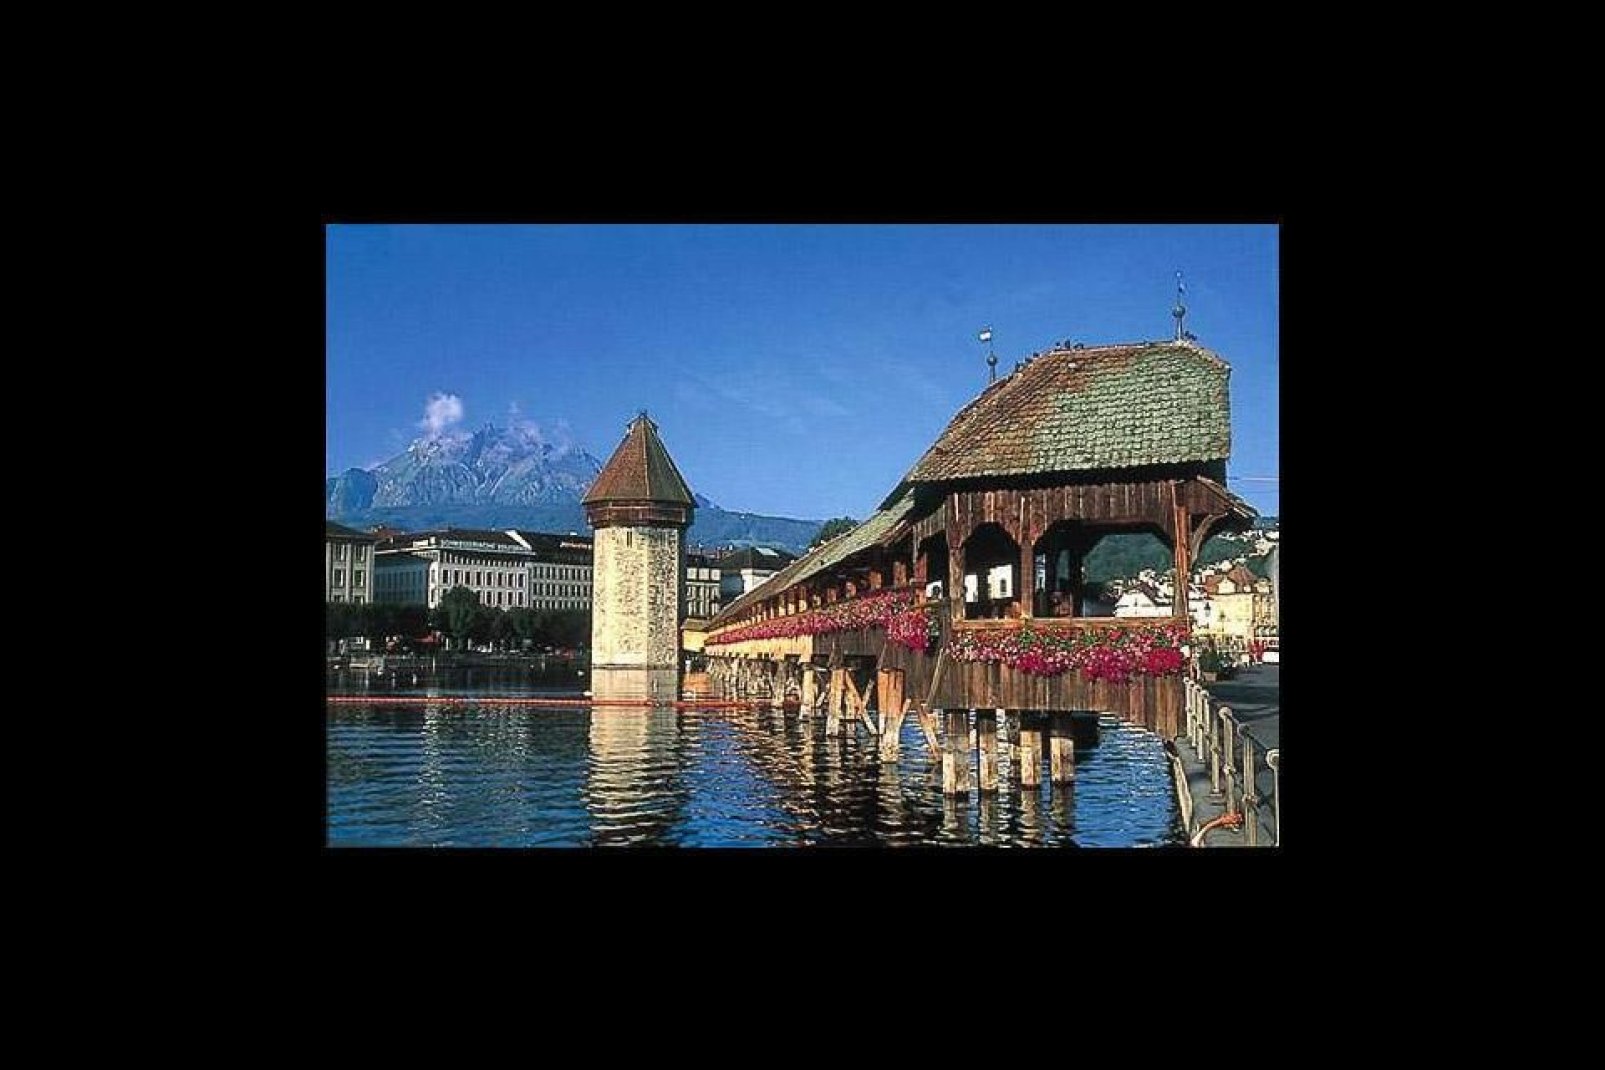 El puente de Lucerna es la principal atracción de la ciudad. Junto con el Monte Cervino, es el elemento más fotografiado de Suiza.